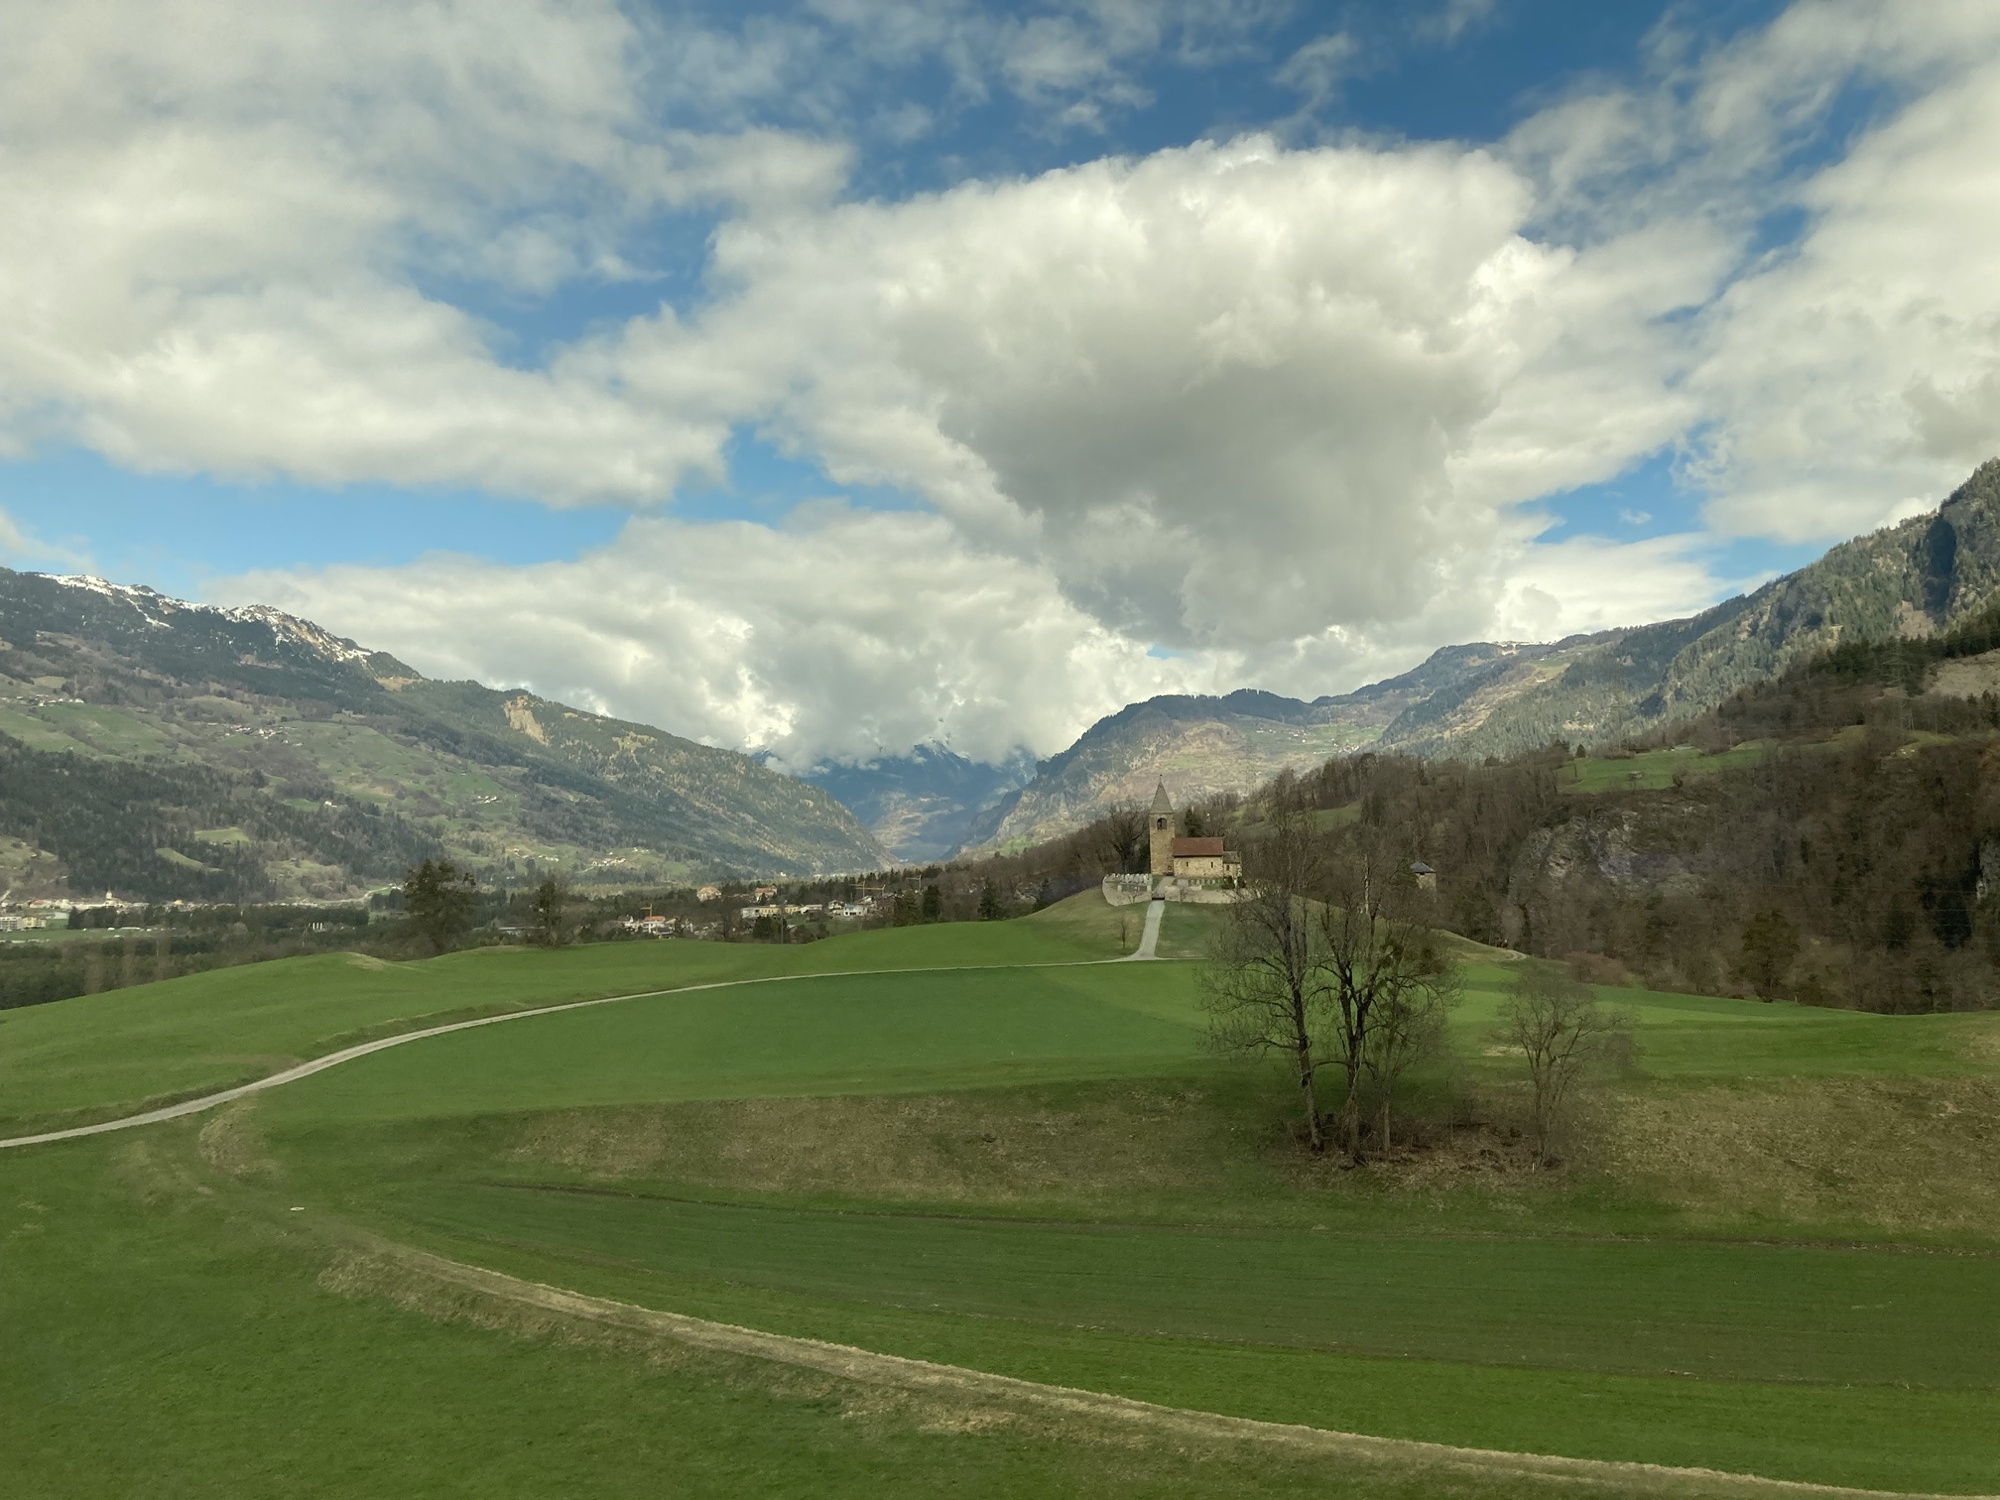 Schweizer Landschaft, Feldweg, der zu einer Kirche auf einem Hügel führt, Berge mit schneebedeckten Spitzen, Wolken vor blauem Himmel